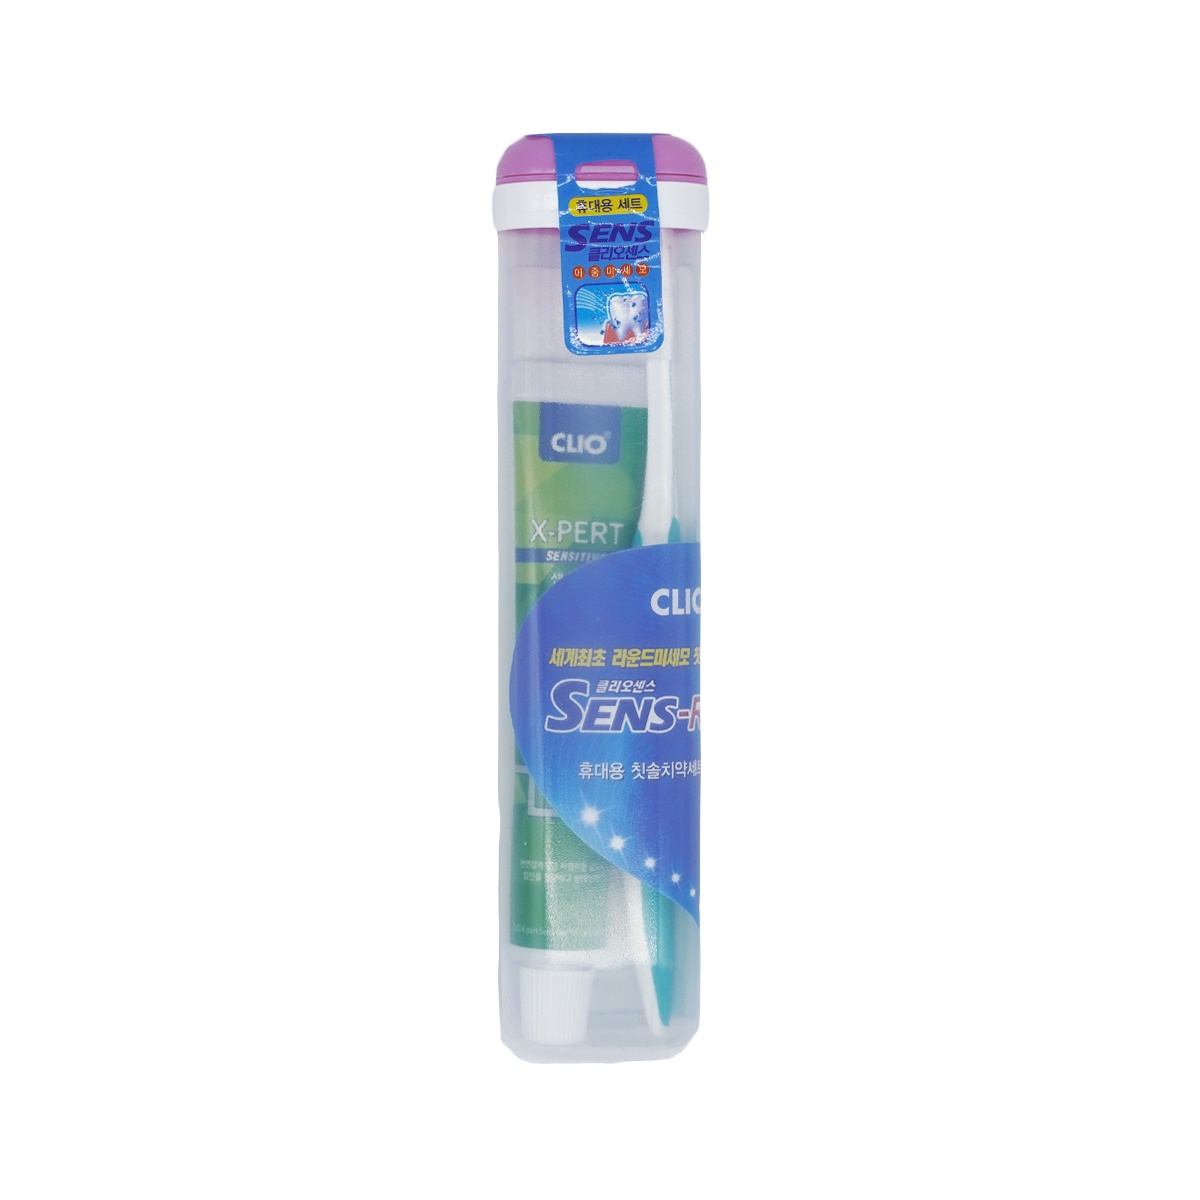 Набор зубная паста + щетка Clio New Portable Sense R + Expert Toothpaste